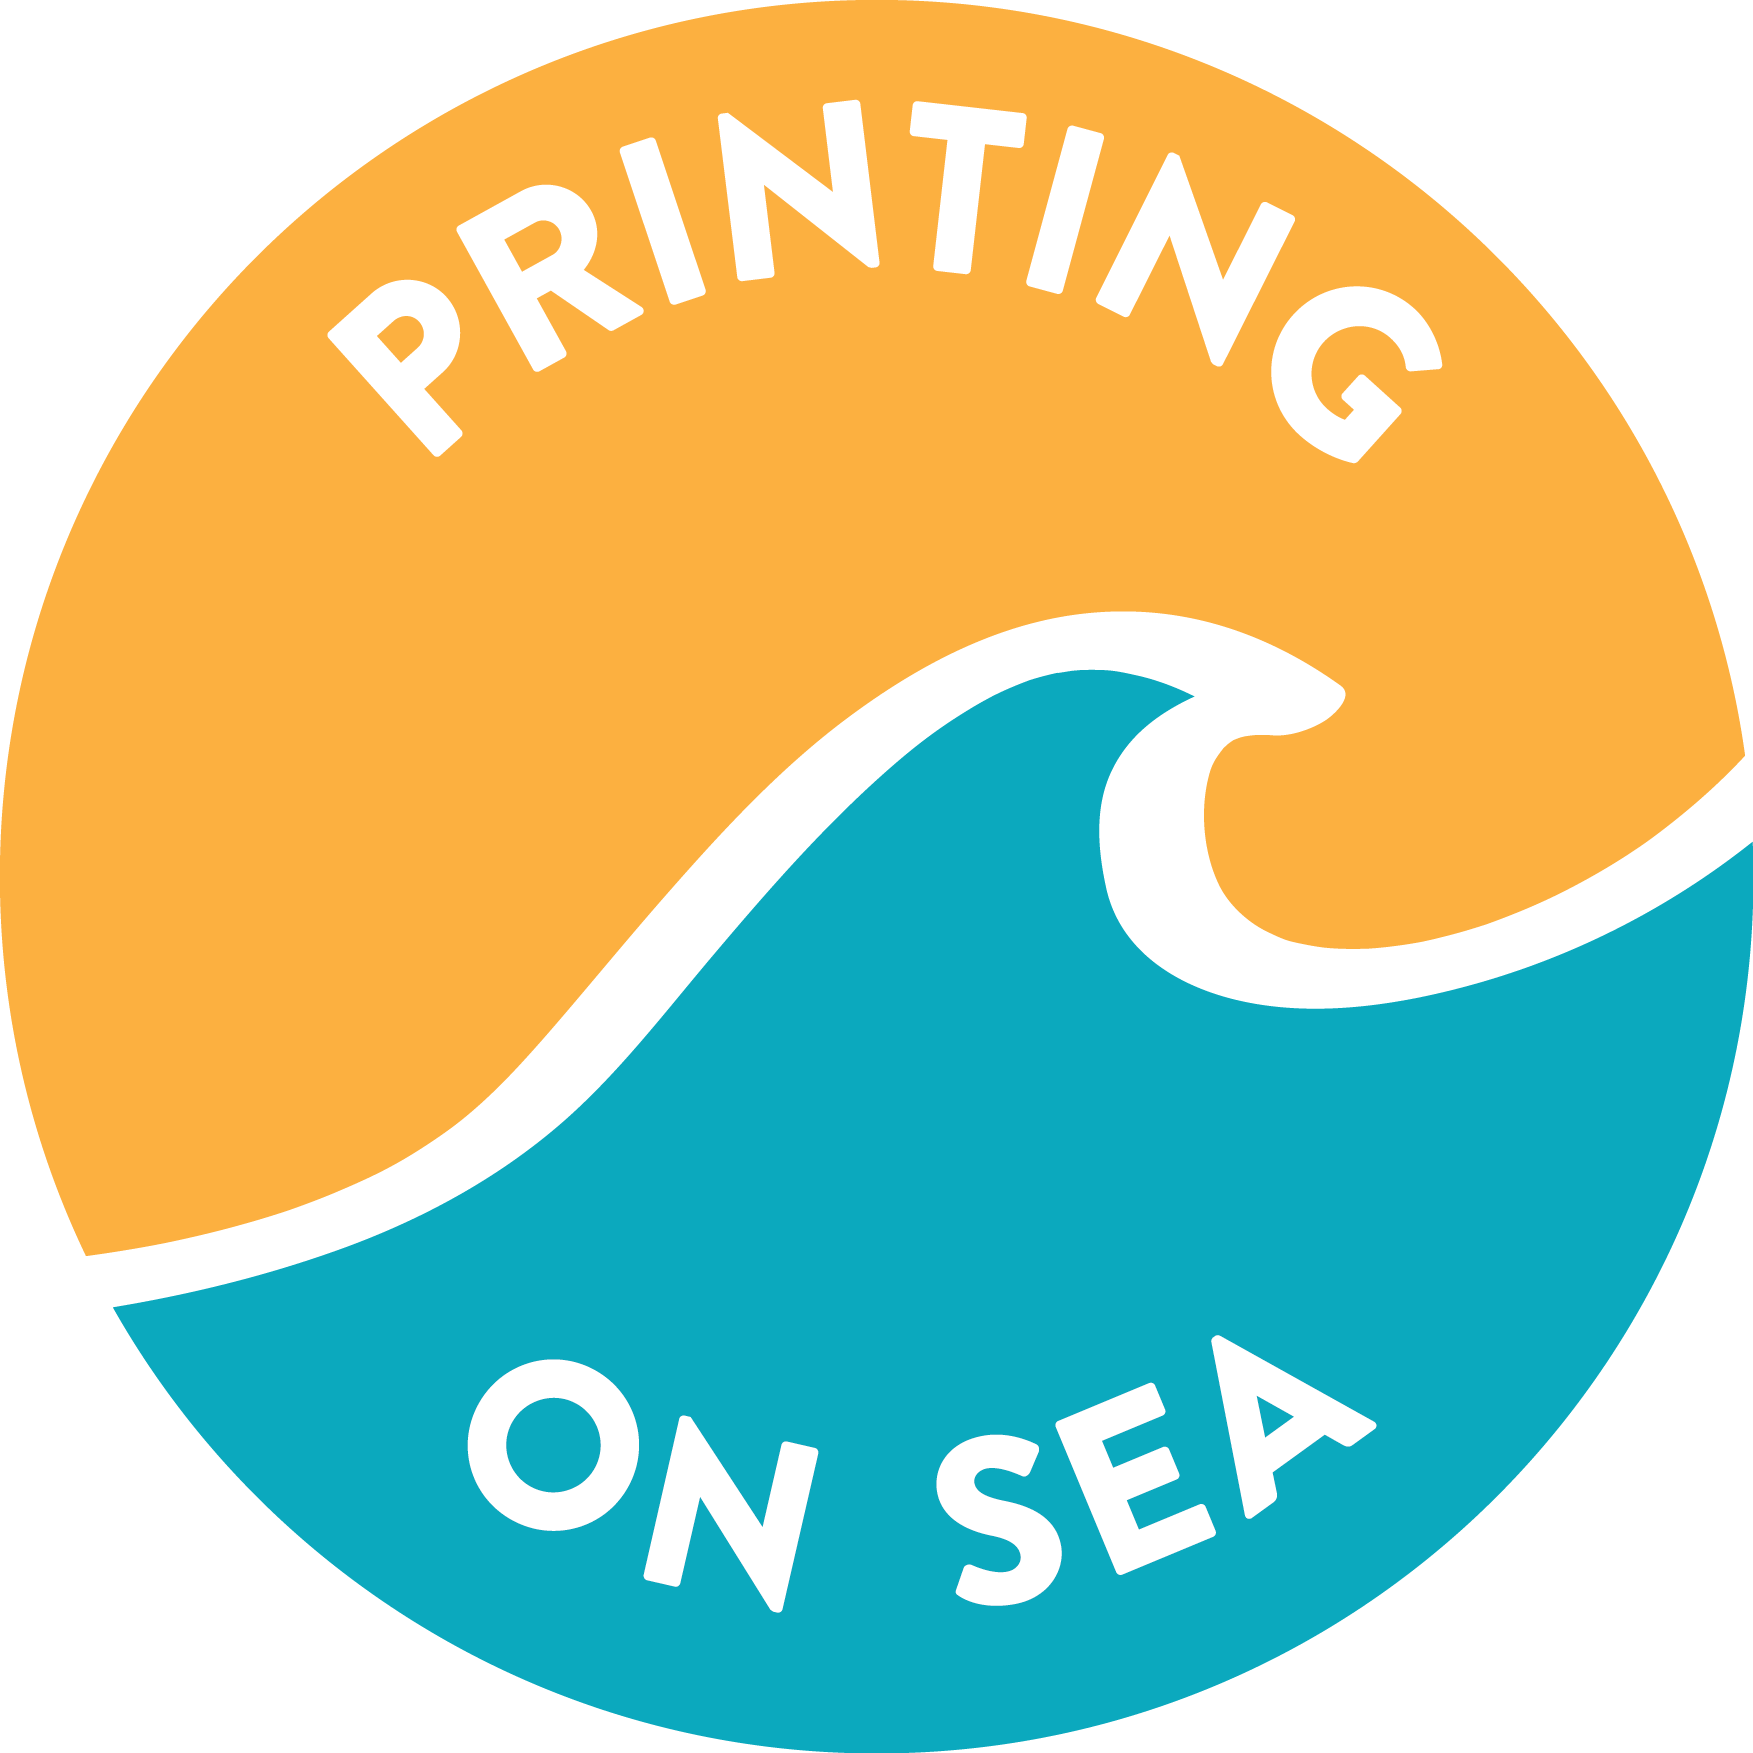 Printing on Sea